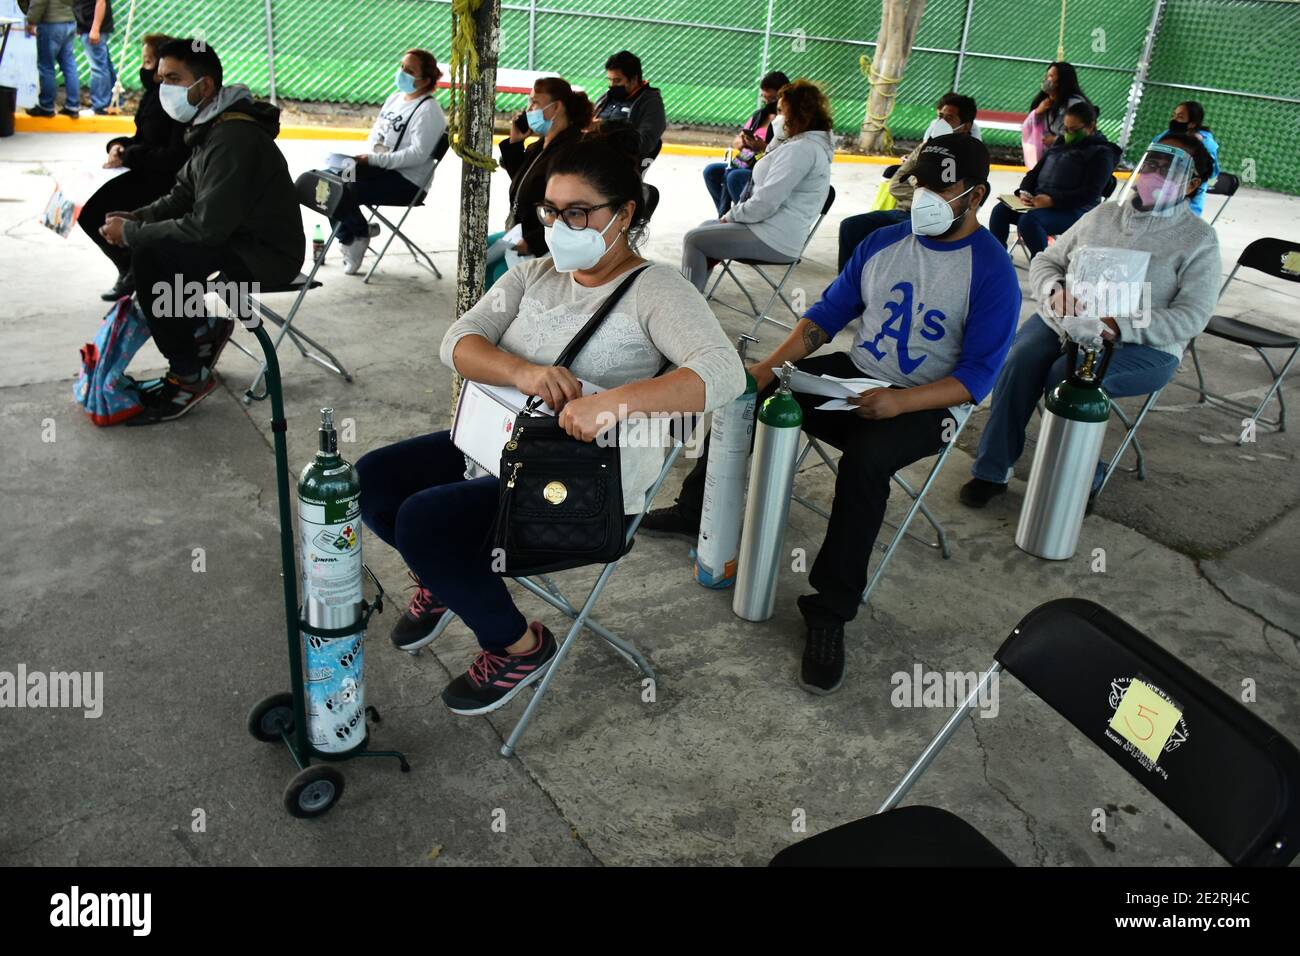 Mexiko-Stadt, Mexiko. Januar 2021. MEXIKO-STADT, MEXIKO - JANUAR 14: Eine Person wartet an der Reihe, um einen Sauerstofftank für ihren Verwandten zu füllen, der mit der SARS Cov-2 infiziert ist, die Covid-19-Krankheit verursacht. Die mexikanische Regierung hat das Wohltätigkeitsprogramm "EINE Verschnaufpause für Ecatepec" gestartet, um Personen zu unterstützen, die Sauerstoffflaschen benötigen, die mit dem Coronavirus infiziert wurden, und zwar am 14. Januar 2021 in Mexiko-Stadt, Mexiko. Kredit: Ricardo Castelan Cruz/Eyepix Gruppe/Der Fotozugang Gutschrift: Der Fotozugang/Alamy Live Nachrichten Stockfoto